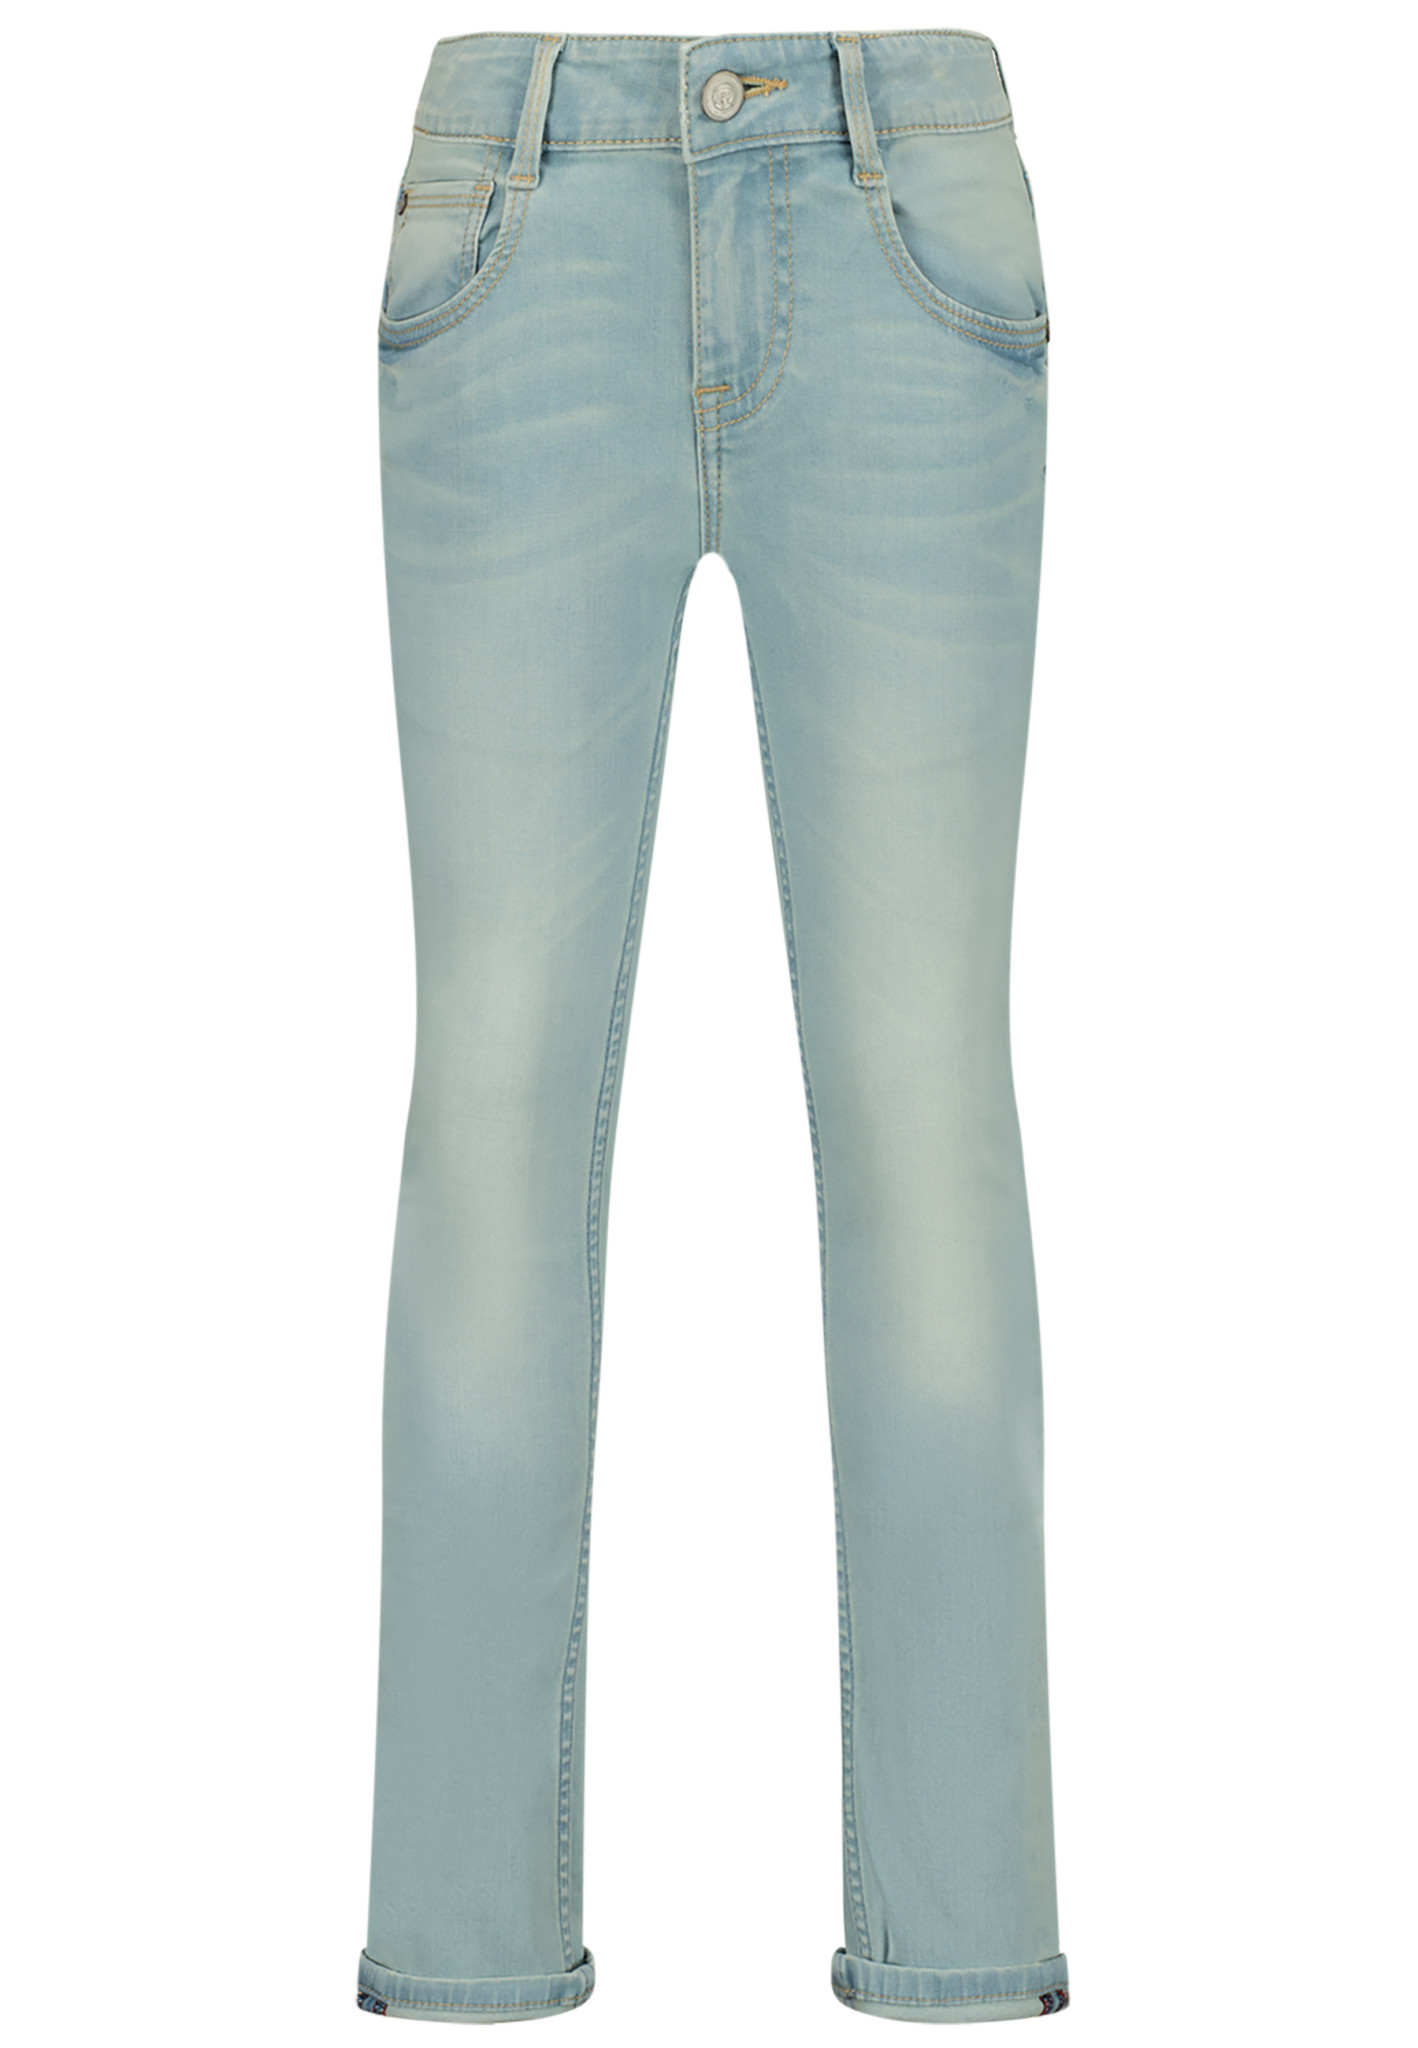 Raizzed Jongens jeans tokyo skinny light blue stone